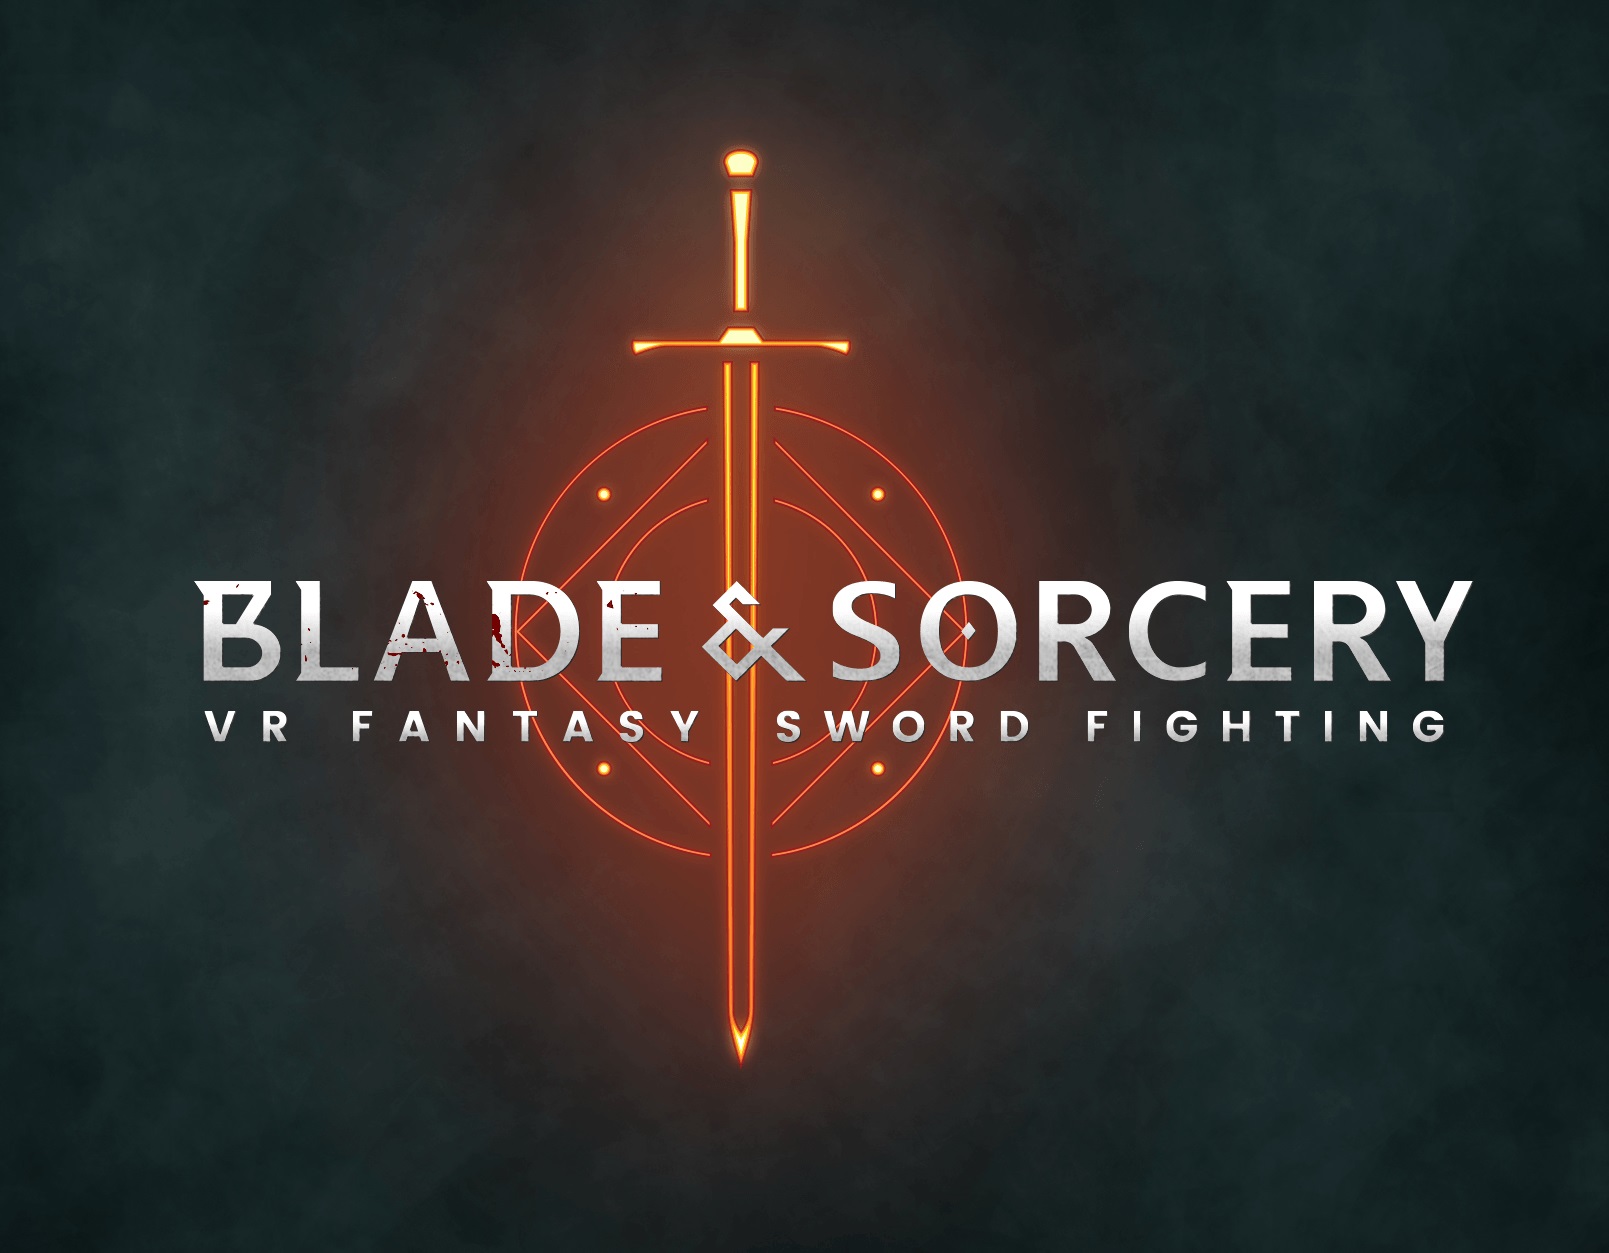 Blade and Sorcery VR Erlebnisse: Eine umfassende Übersicht des Spielerlebnisses